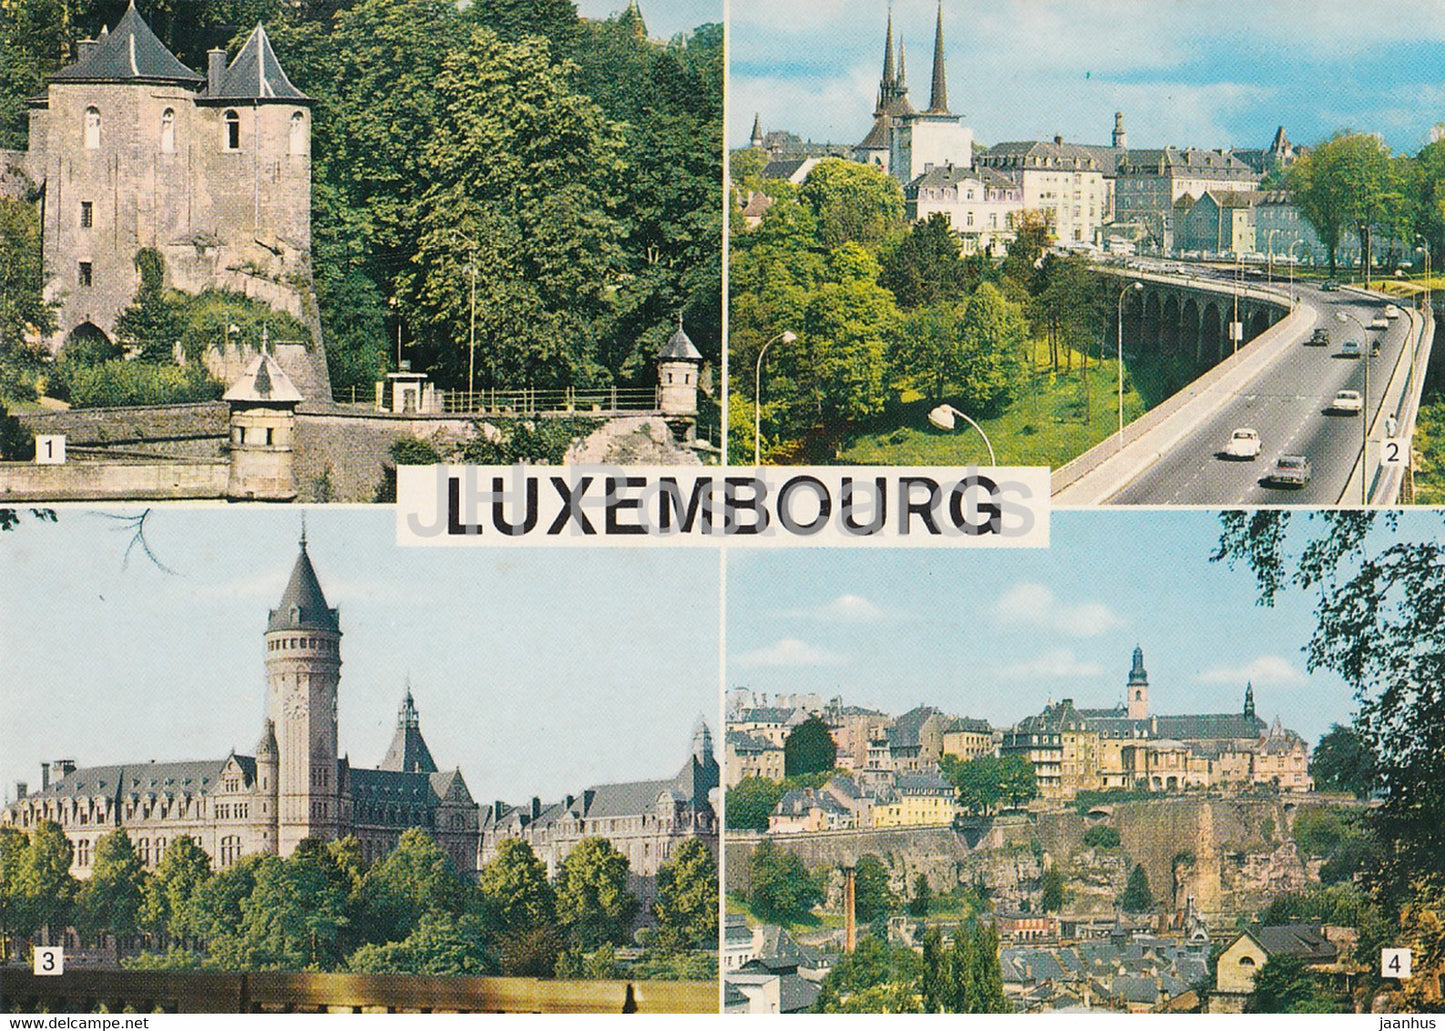 Les Trois Tours - La Passerelle - Caisse d'Epargne - Luxembourg - unused - JH Postcards